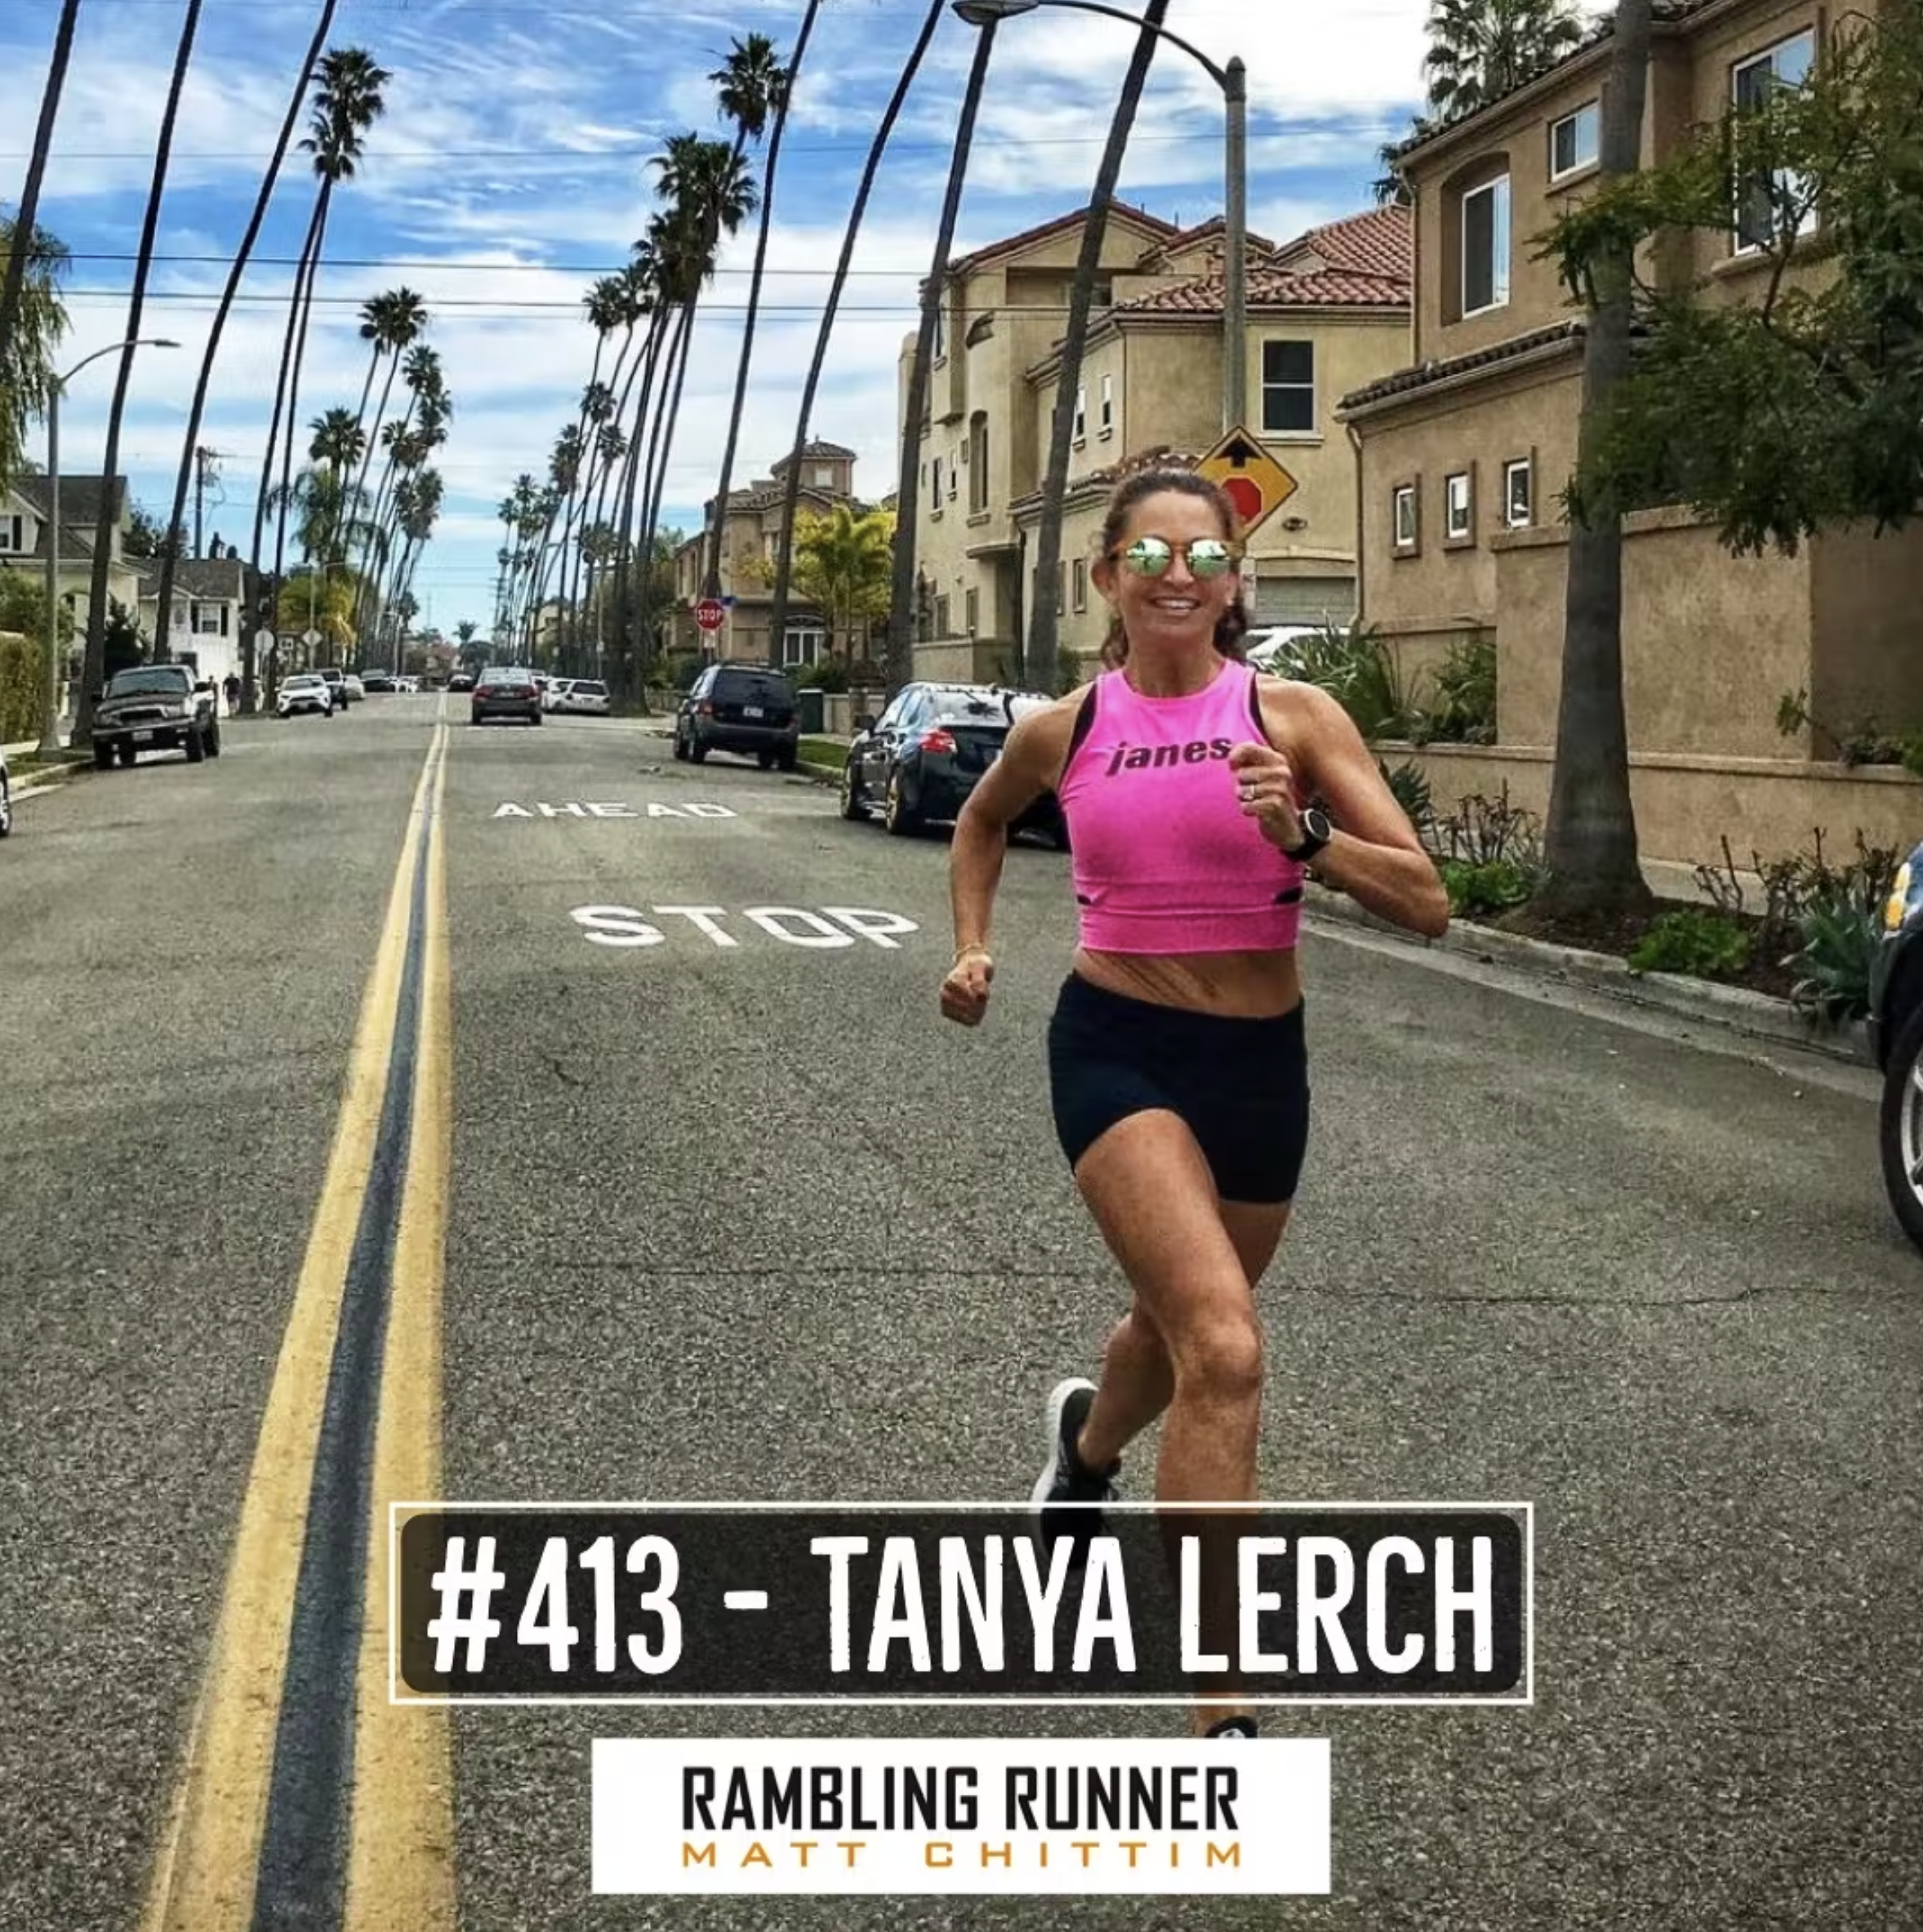 Tanya Lerch Rambling Runner Janes Elite Racing